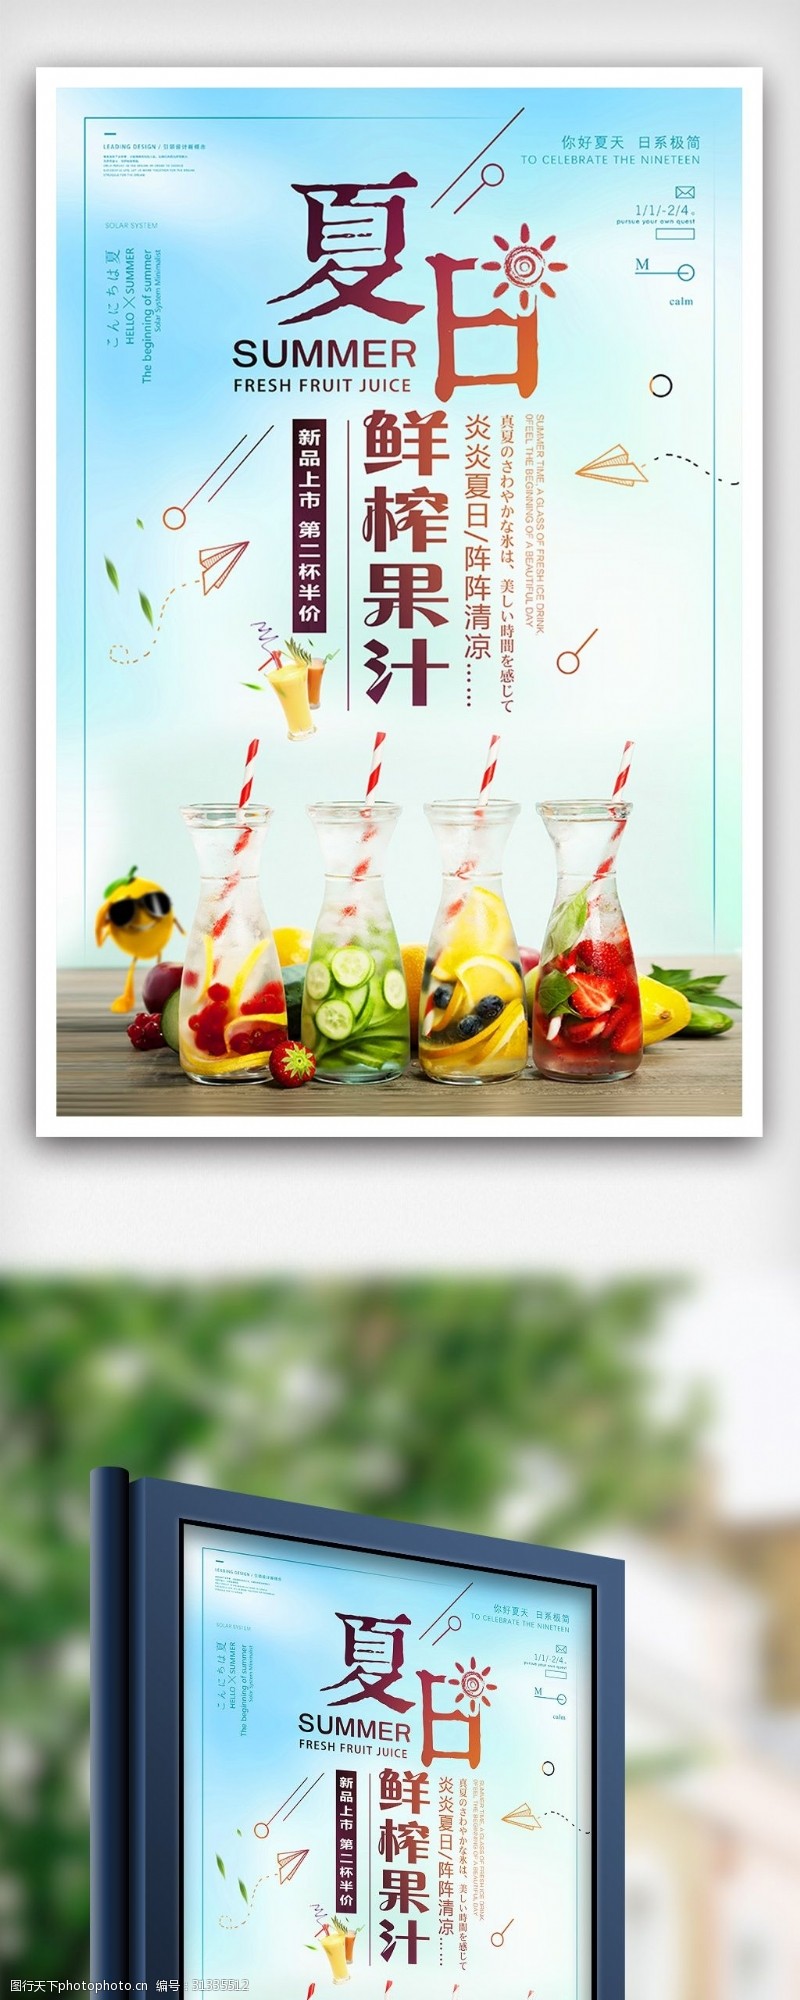 鲜榨果汁免费下载夏日鲜榨果汁夏天水果饮料海报设计